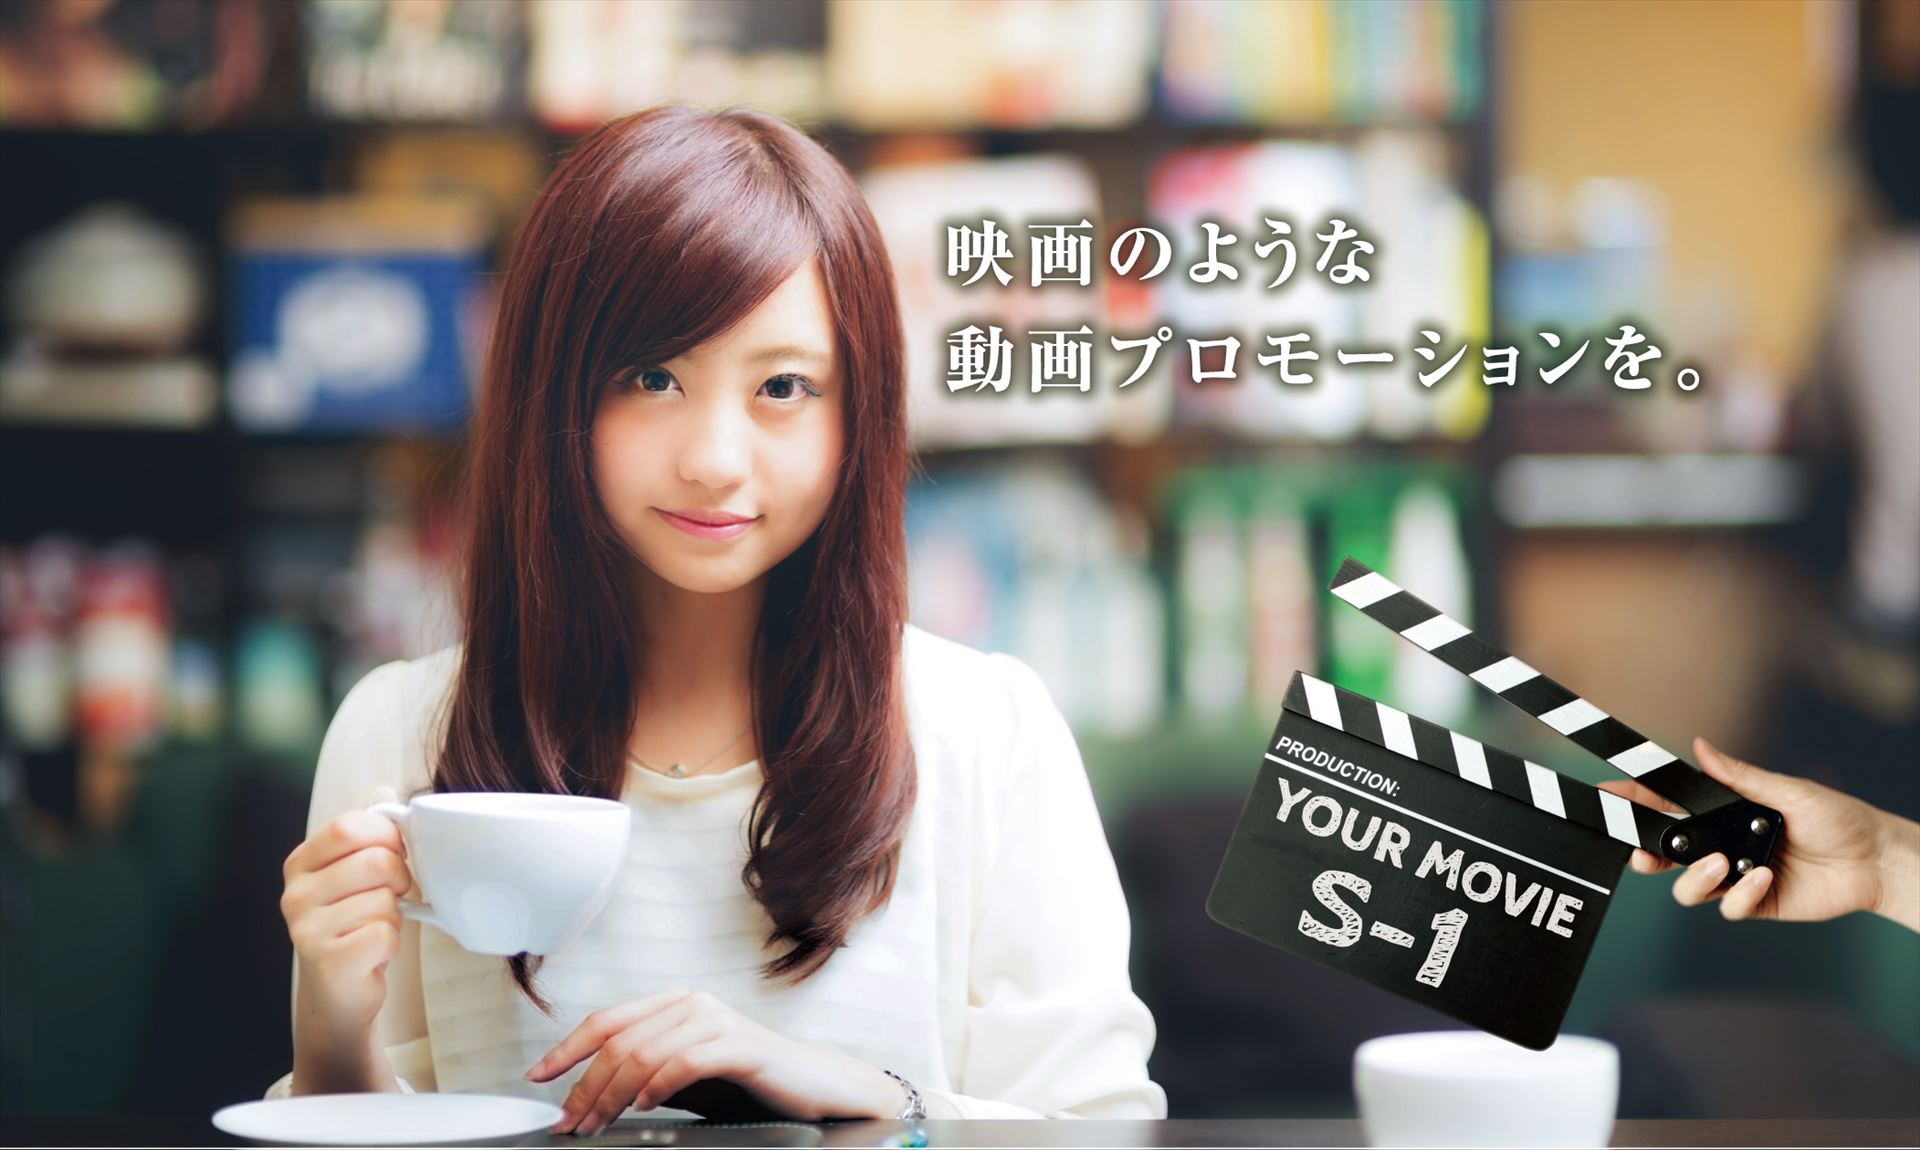 映画のような動画プロモーションを|神戸動画ラボ